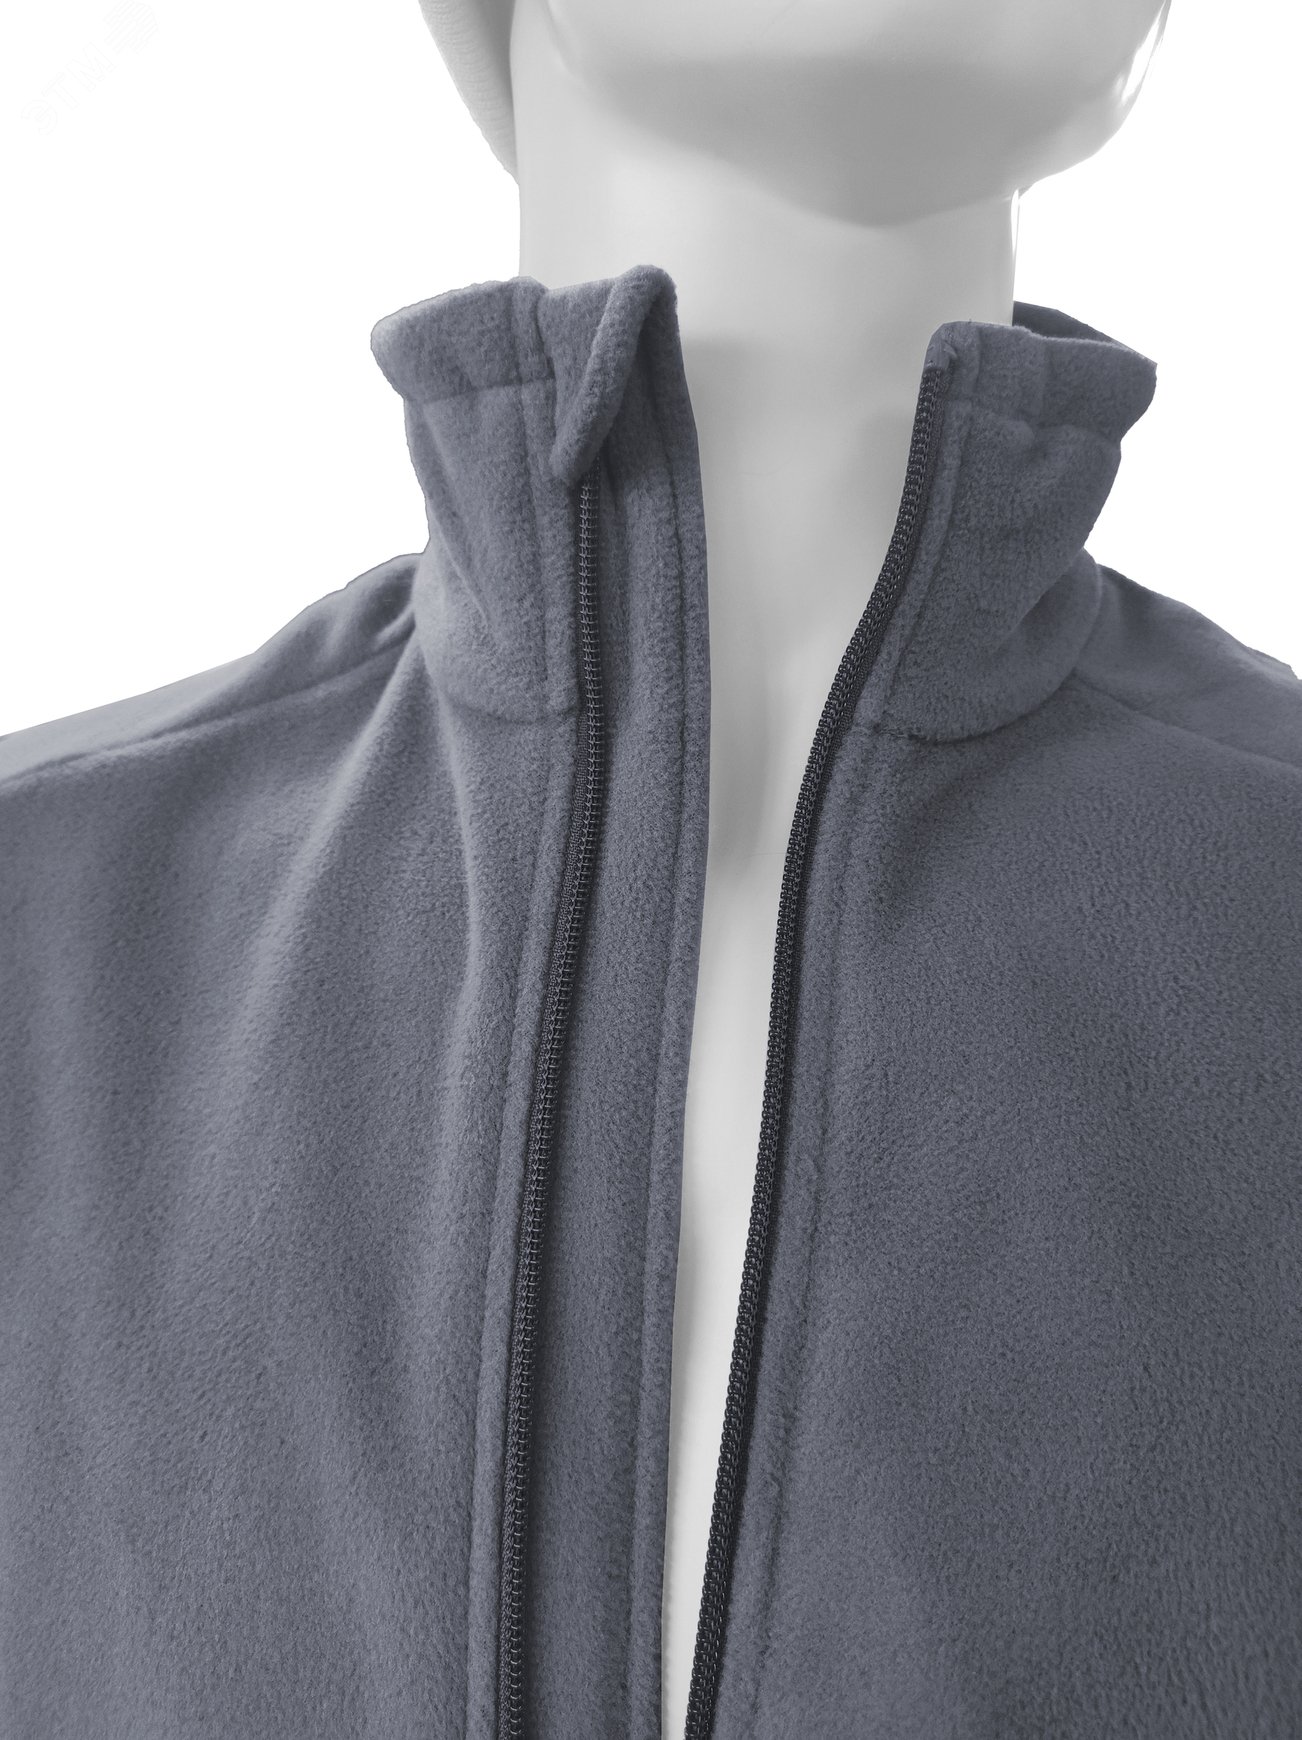 Куртка флисовая арт. JF-01 на молнии цв. серый 48-50 р. M 142302 Эталон-Спецодежда - превью 9